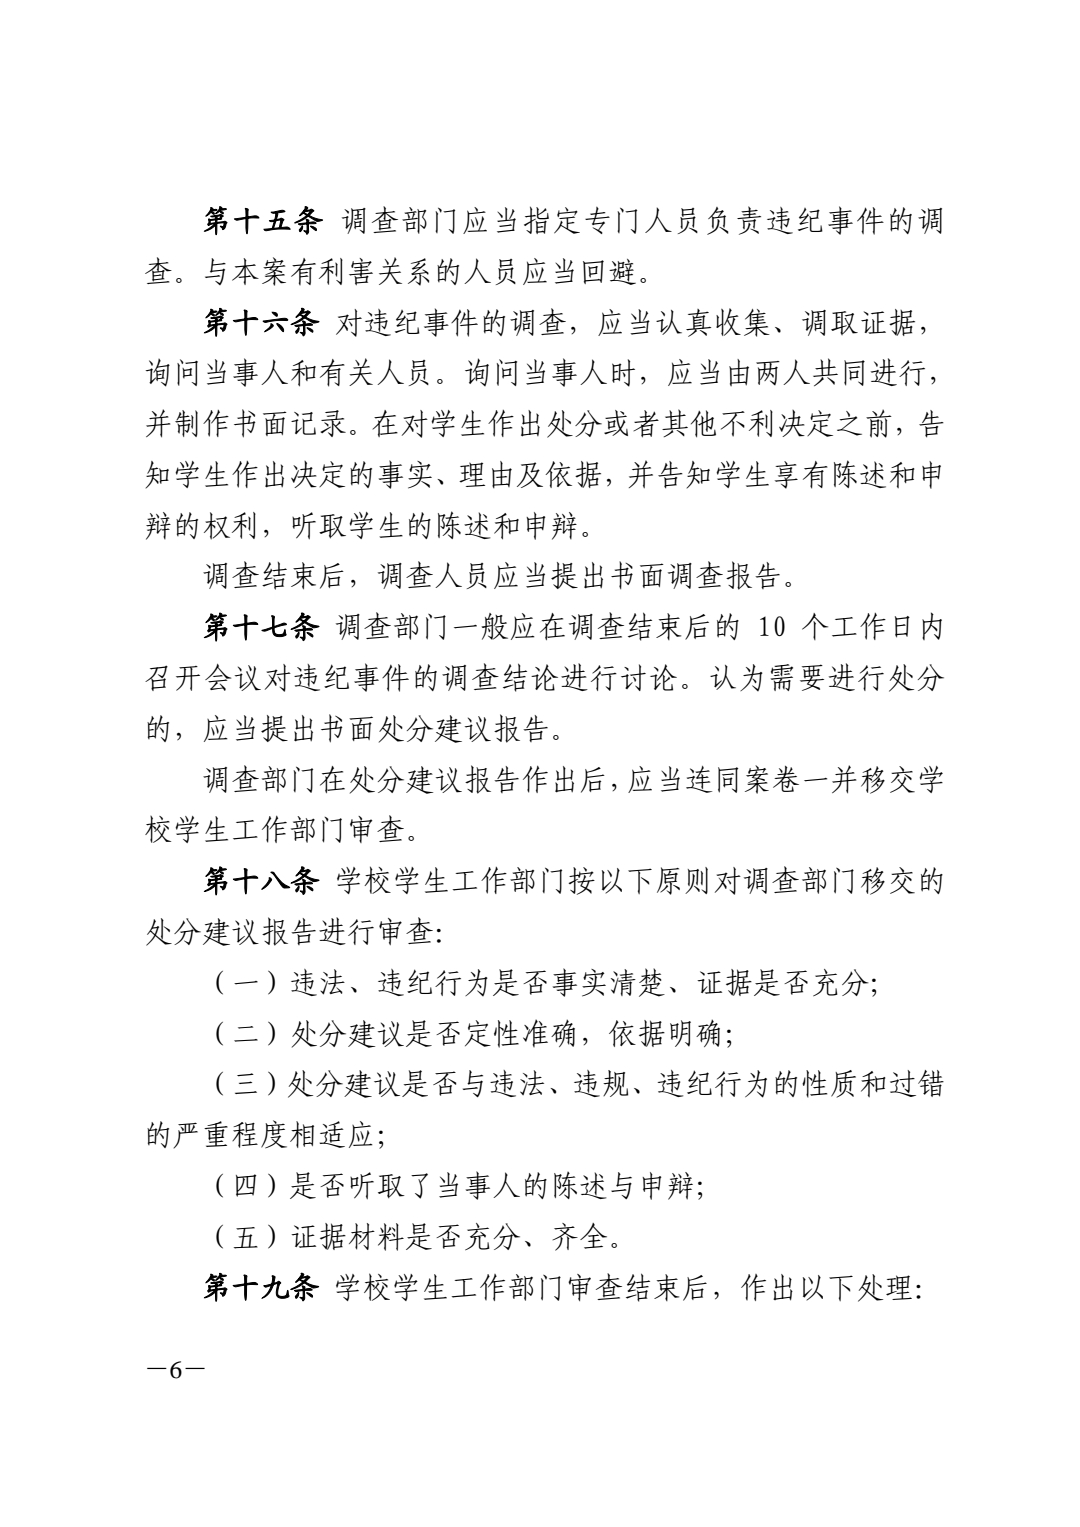 关于印发《南昌大学学生纪律处分办法（2021年修订）》的通知_pdf_16180286965.jpg